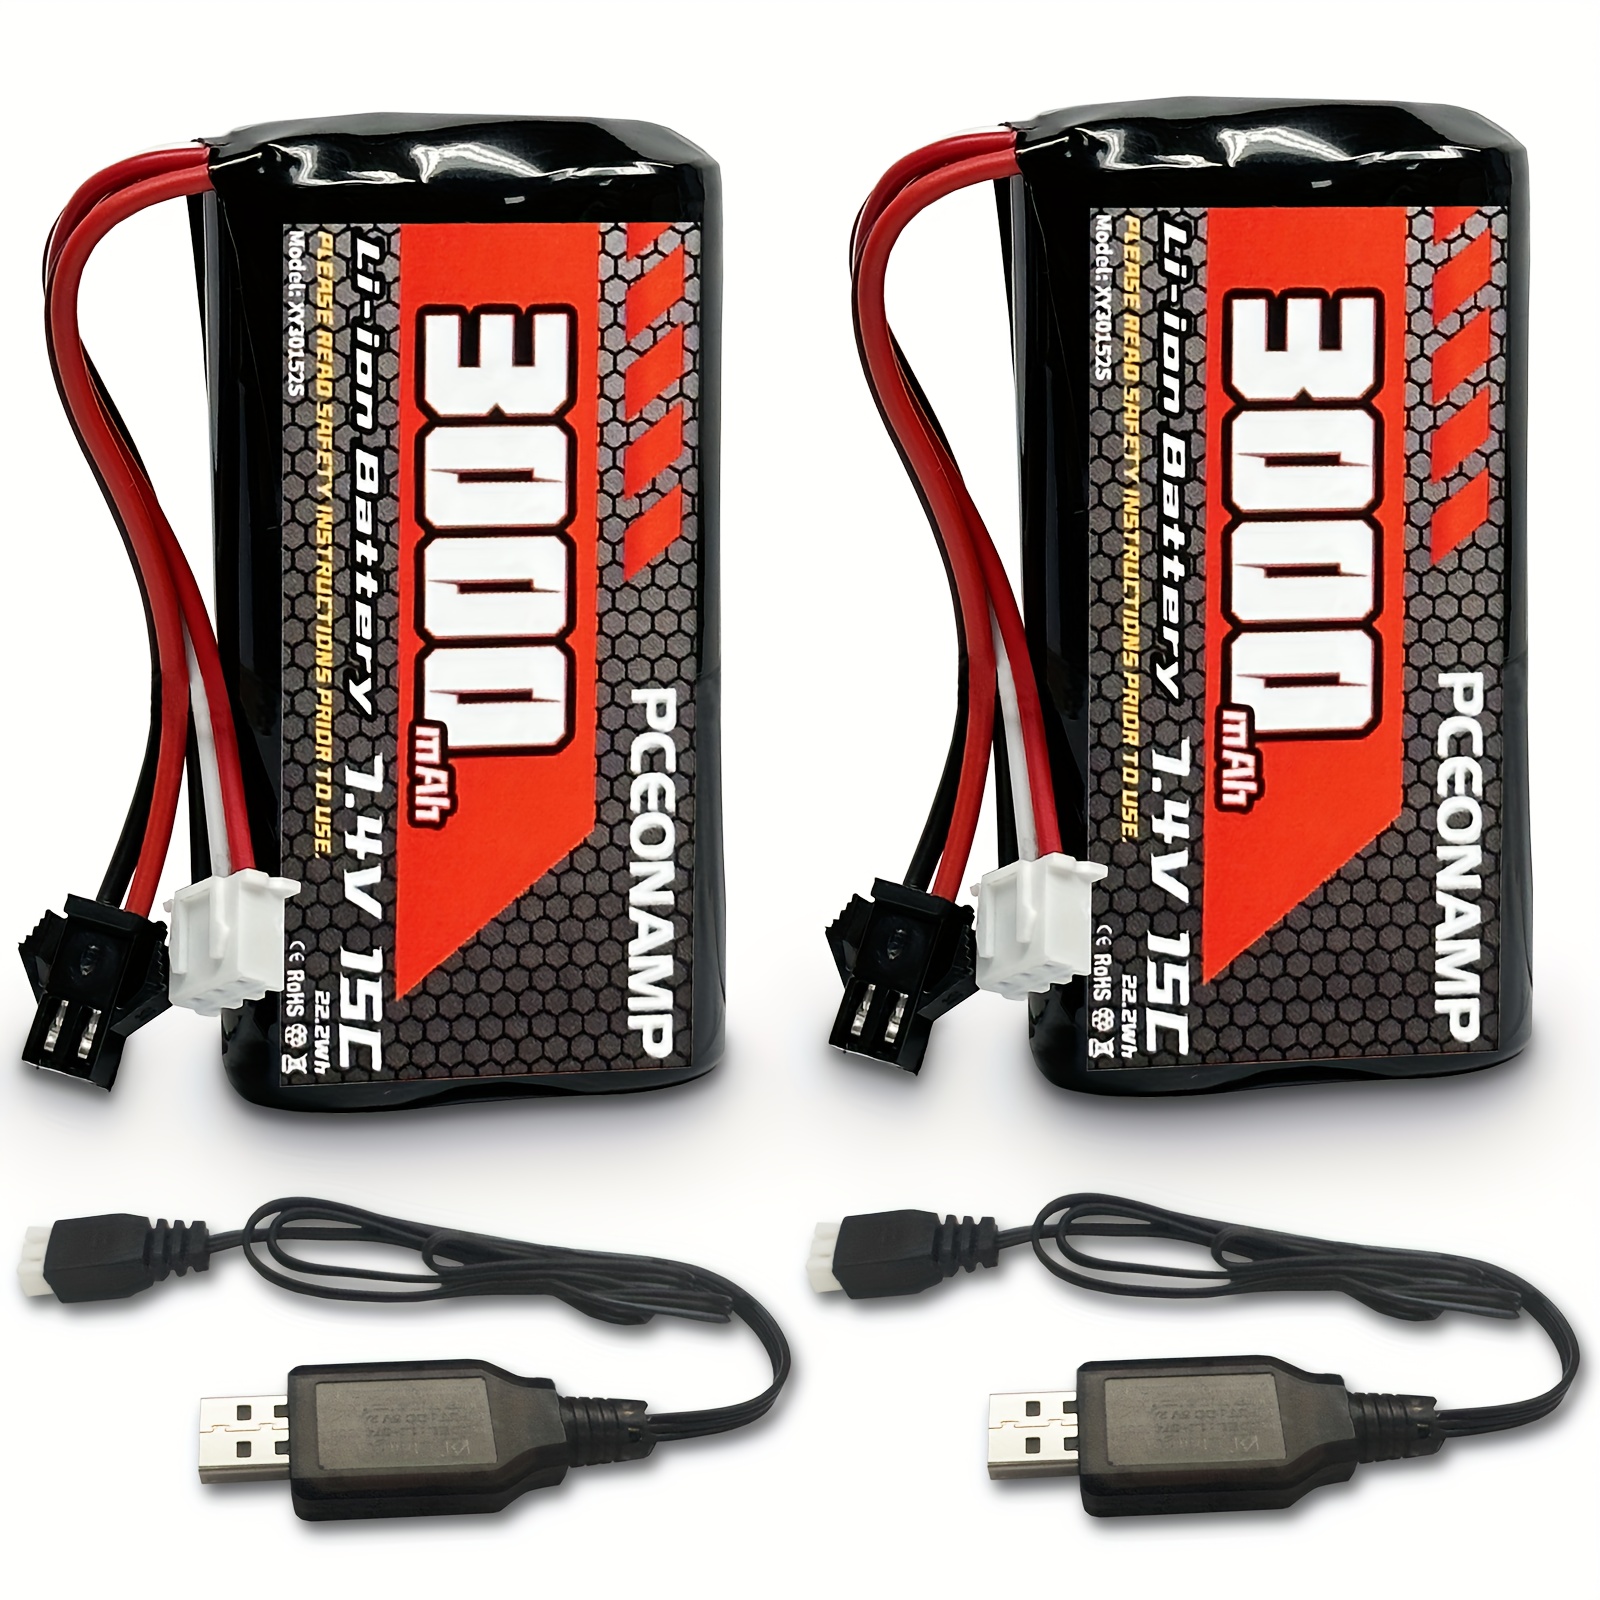 Vhbw Batterie compatible avec Carrera 800007, 800010 modèlisme RC (1500mAh,  11,1V, Li-ion)